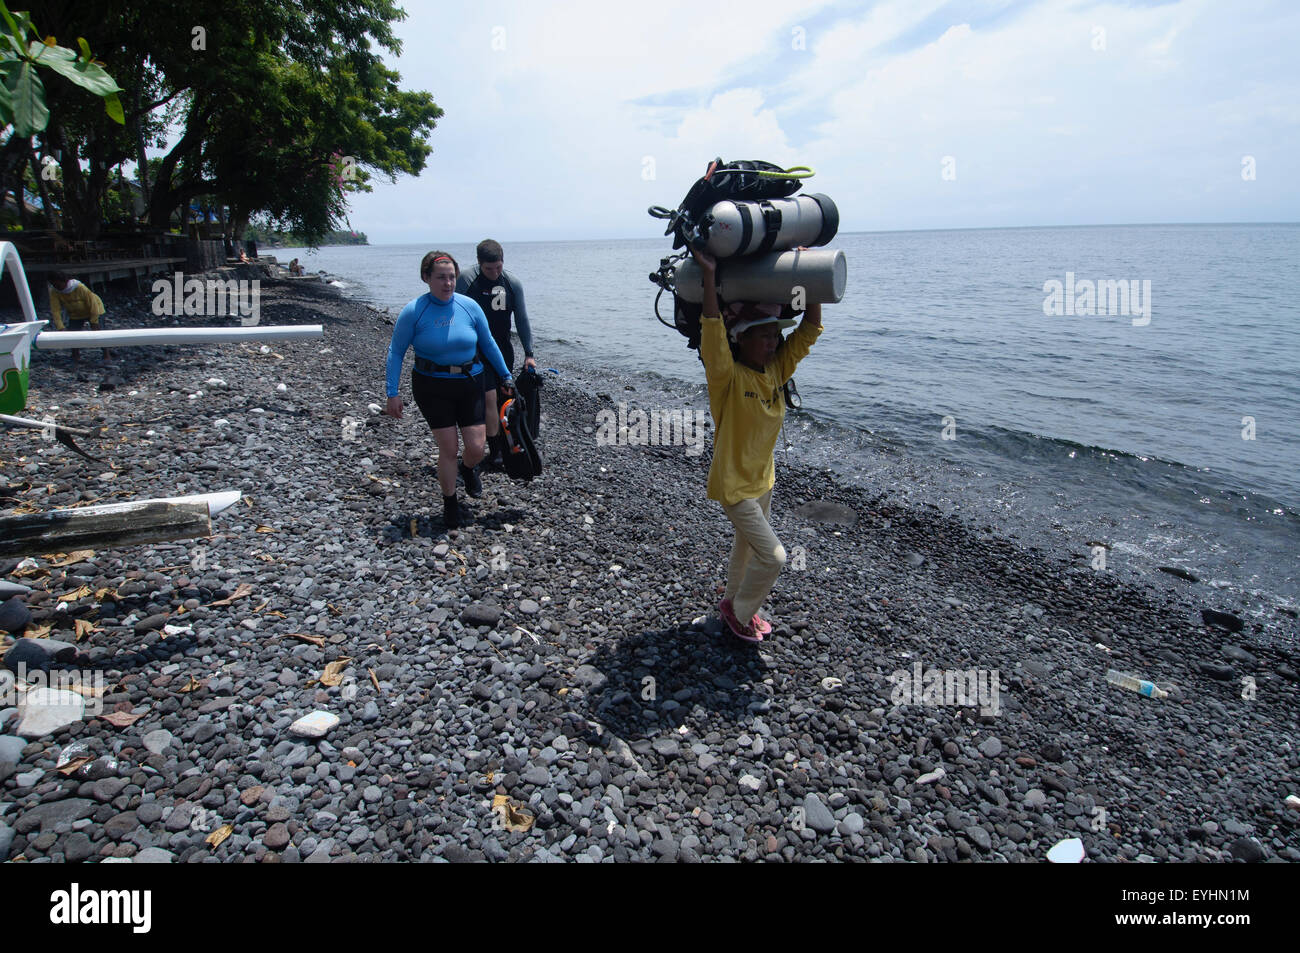 Eine weibliche Porter trägt zwei vollbeladenen Tauchflaschen auf dem Kopf entlang einer felsigen Strand, während die Taucher, Tulamben folgen Stockfoto